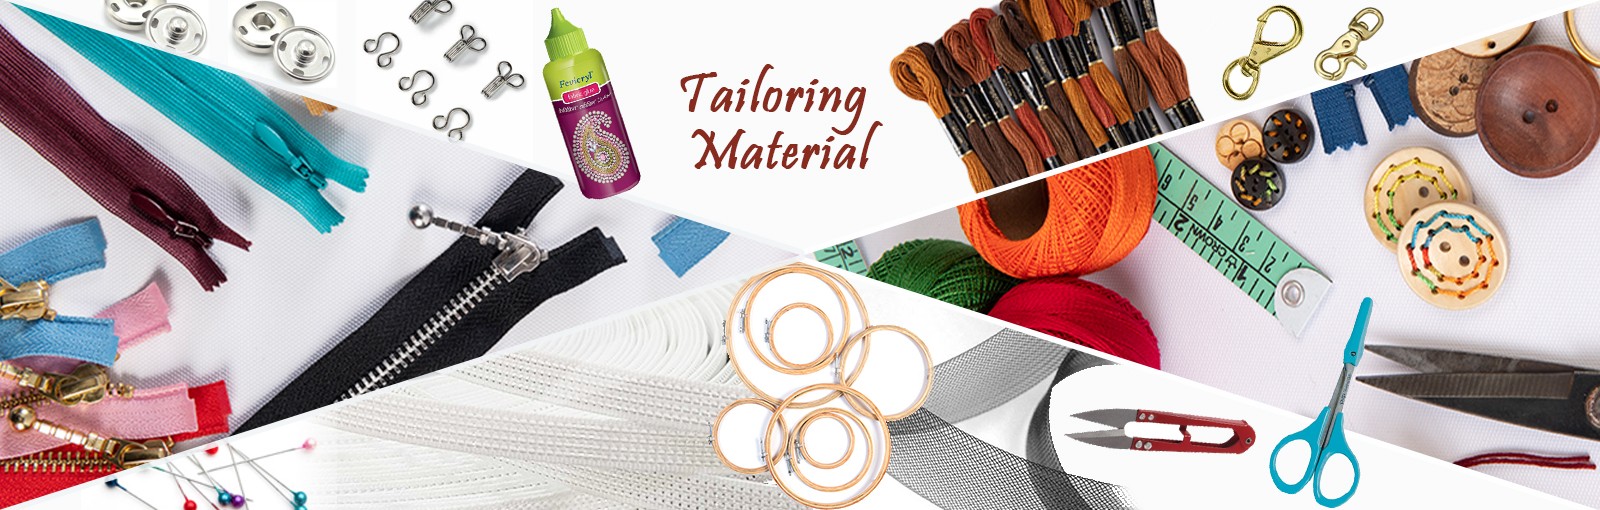 Tailoring Material